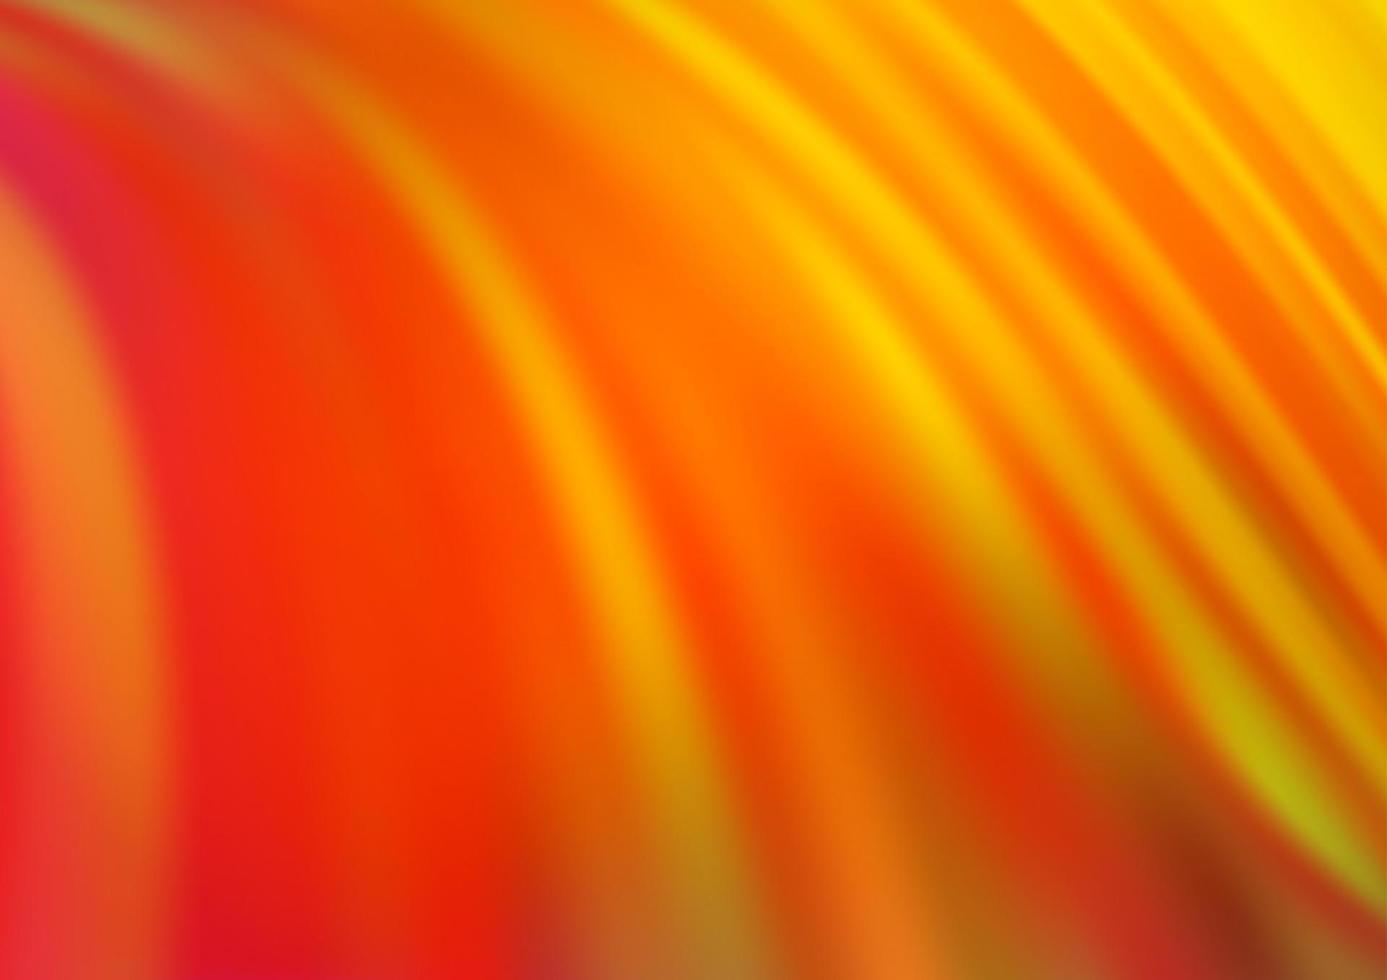 ljusgul, orange vektorbakgrund med bubbelformer. vektor